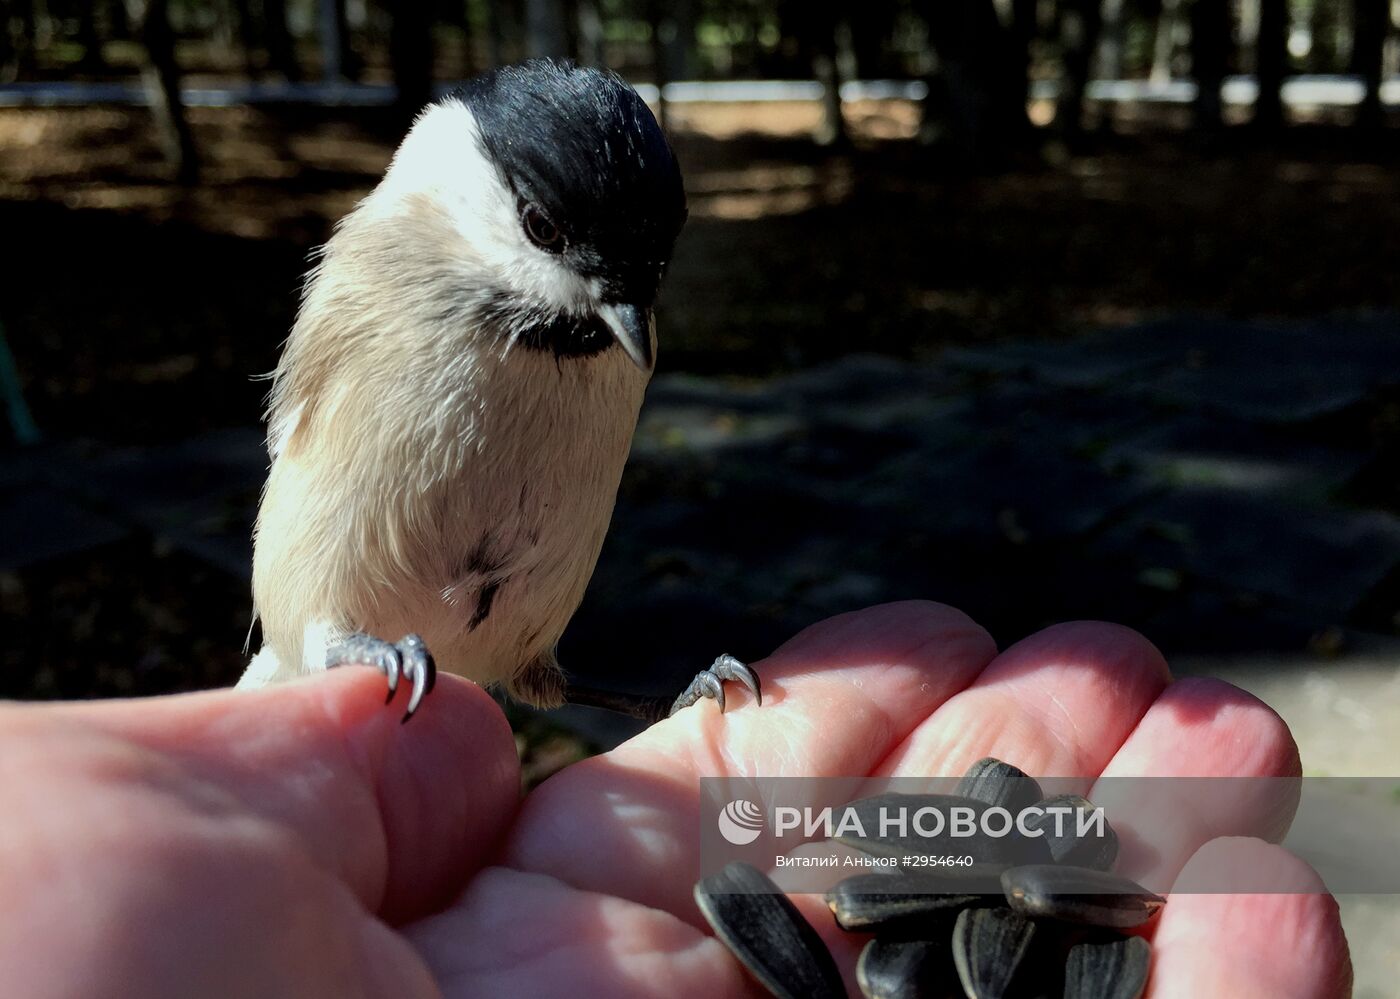 Маньчжурские белки и птицы в парке во Владивостоке